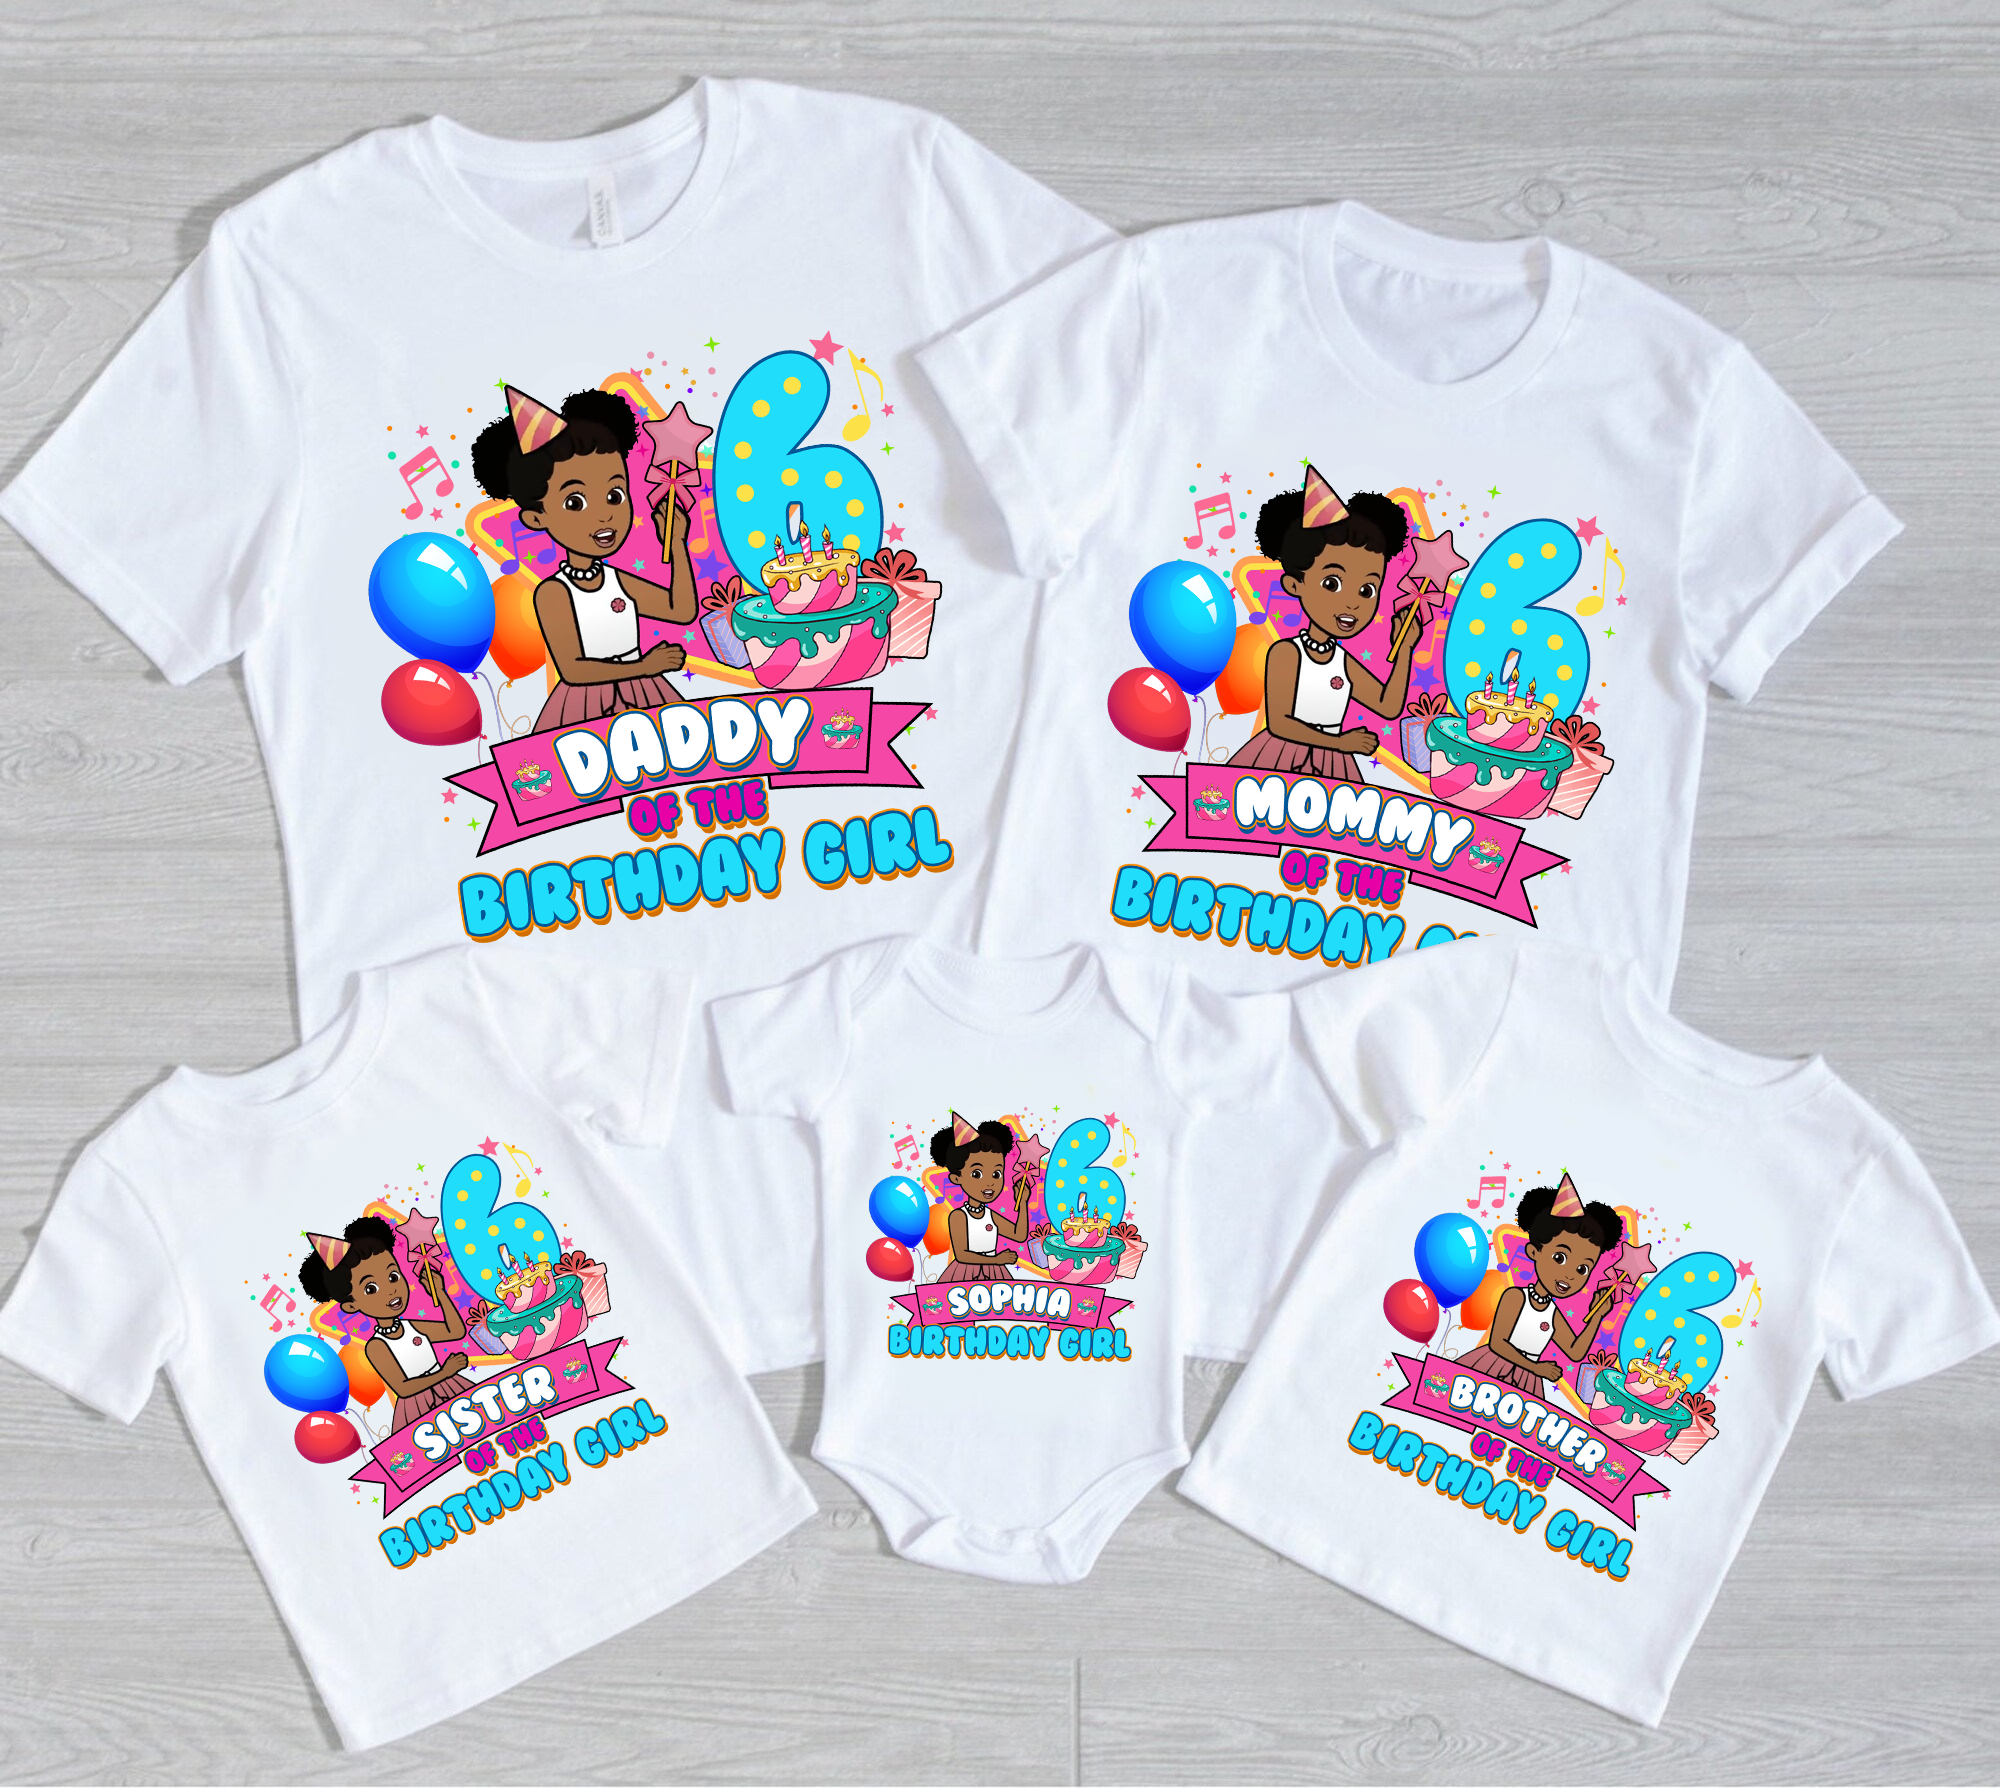 Personalized Gracies Corner Birthday Shirt, Custom Matching Family Shirt, Personalized Birthday Gifts